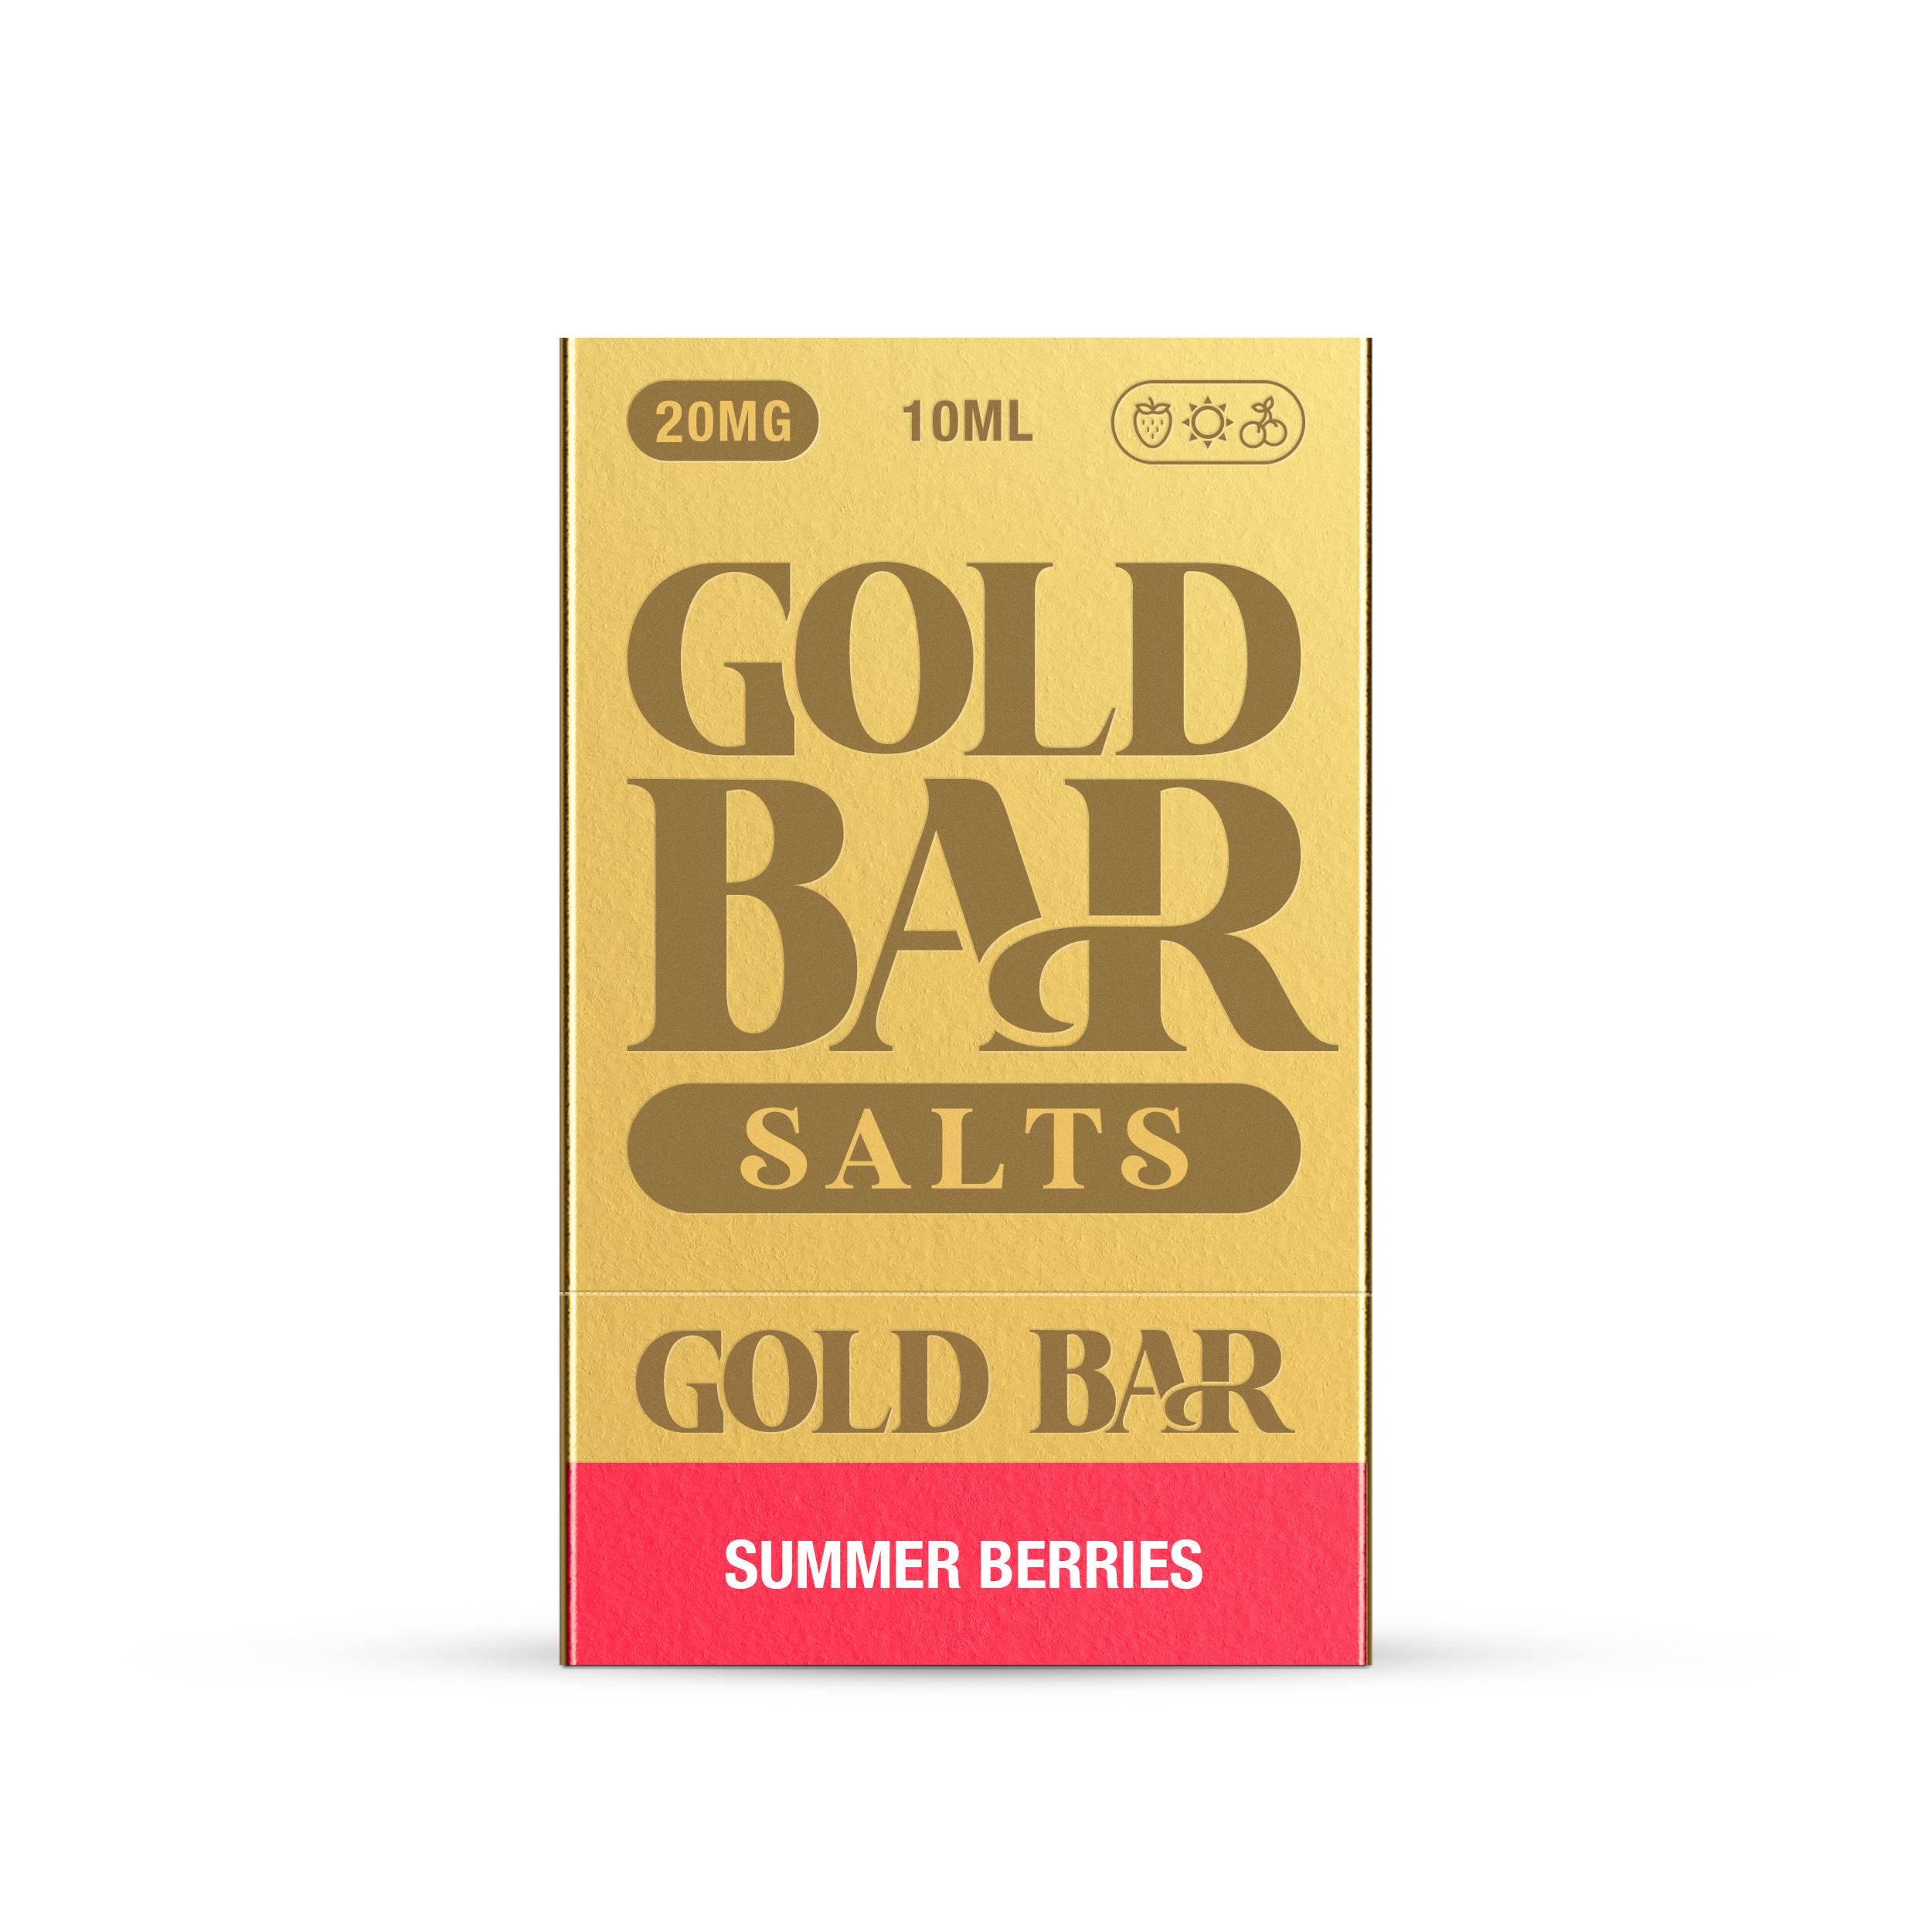 GOLD BAR SALTS 10ML SUMMER BERRIES (10)